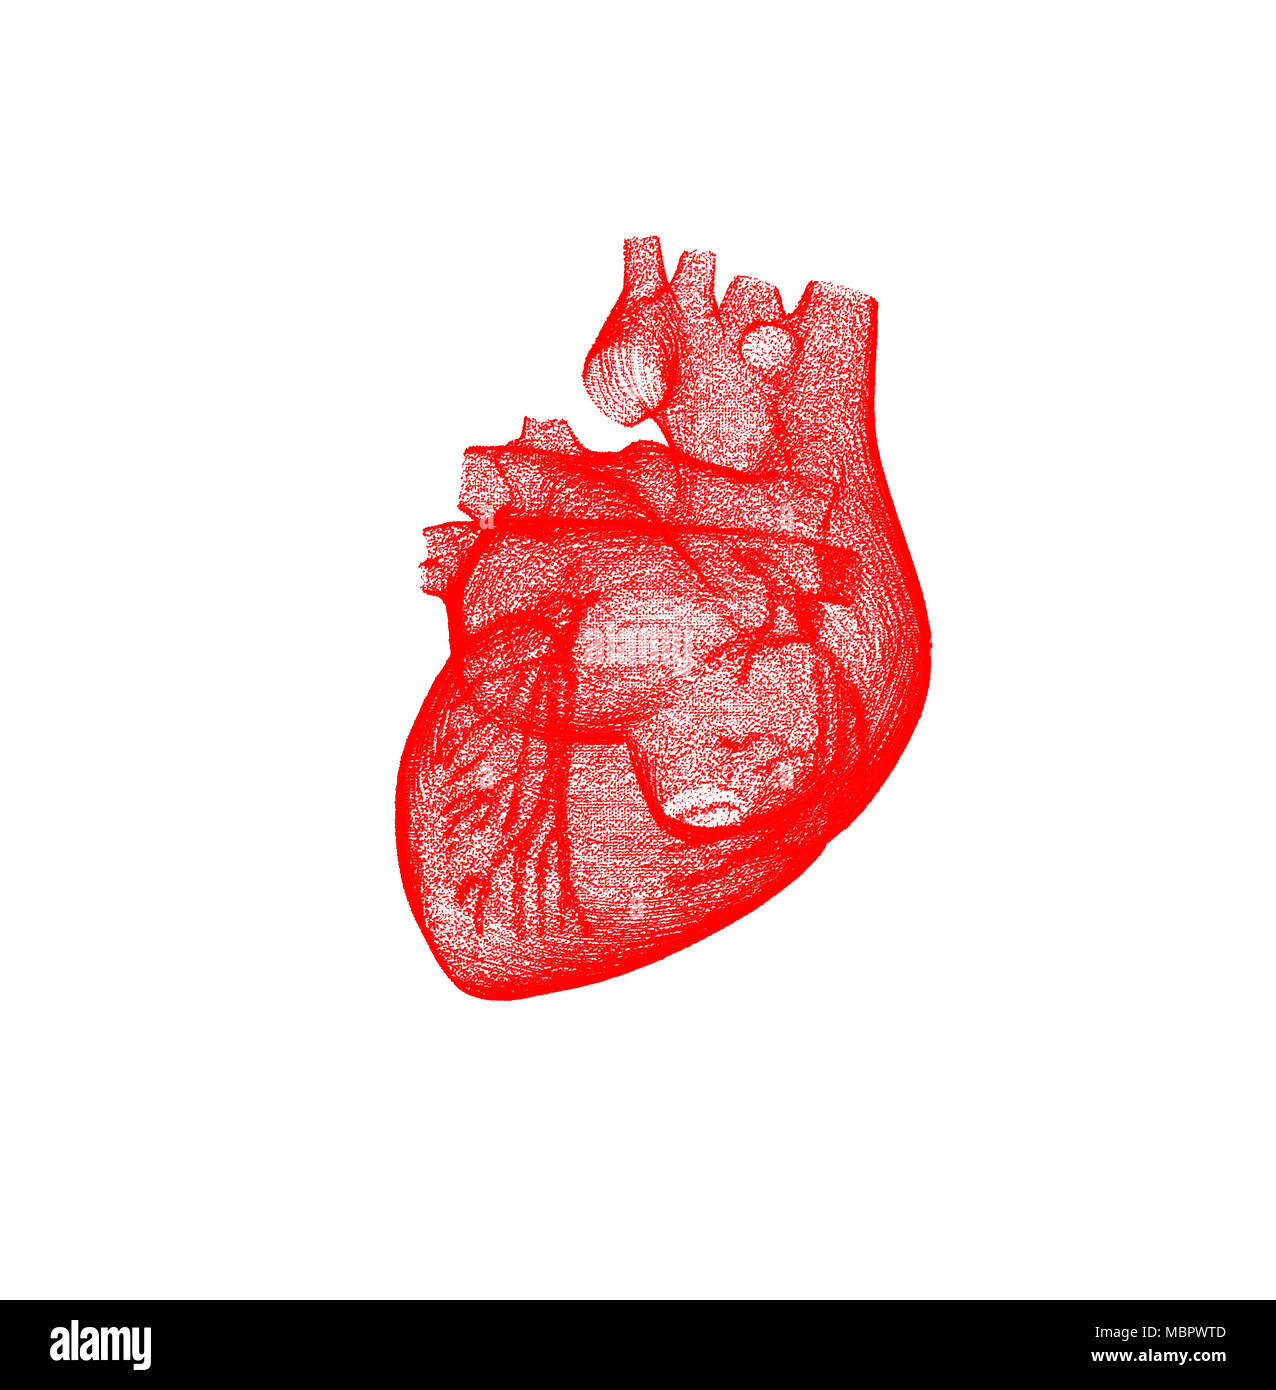 Rosso maglia modello di un cuore umano isolato su sfondo bianco Foto Stock